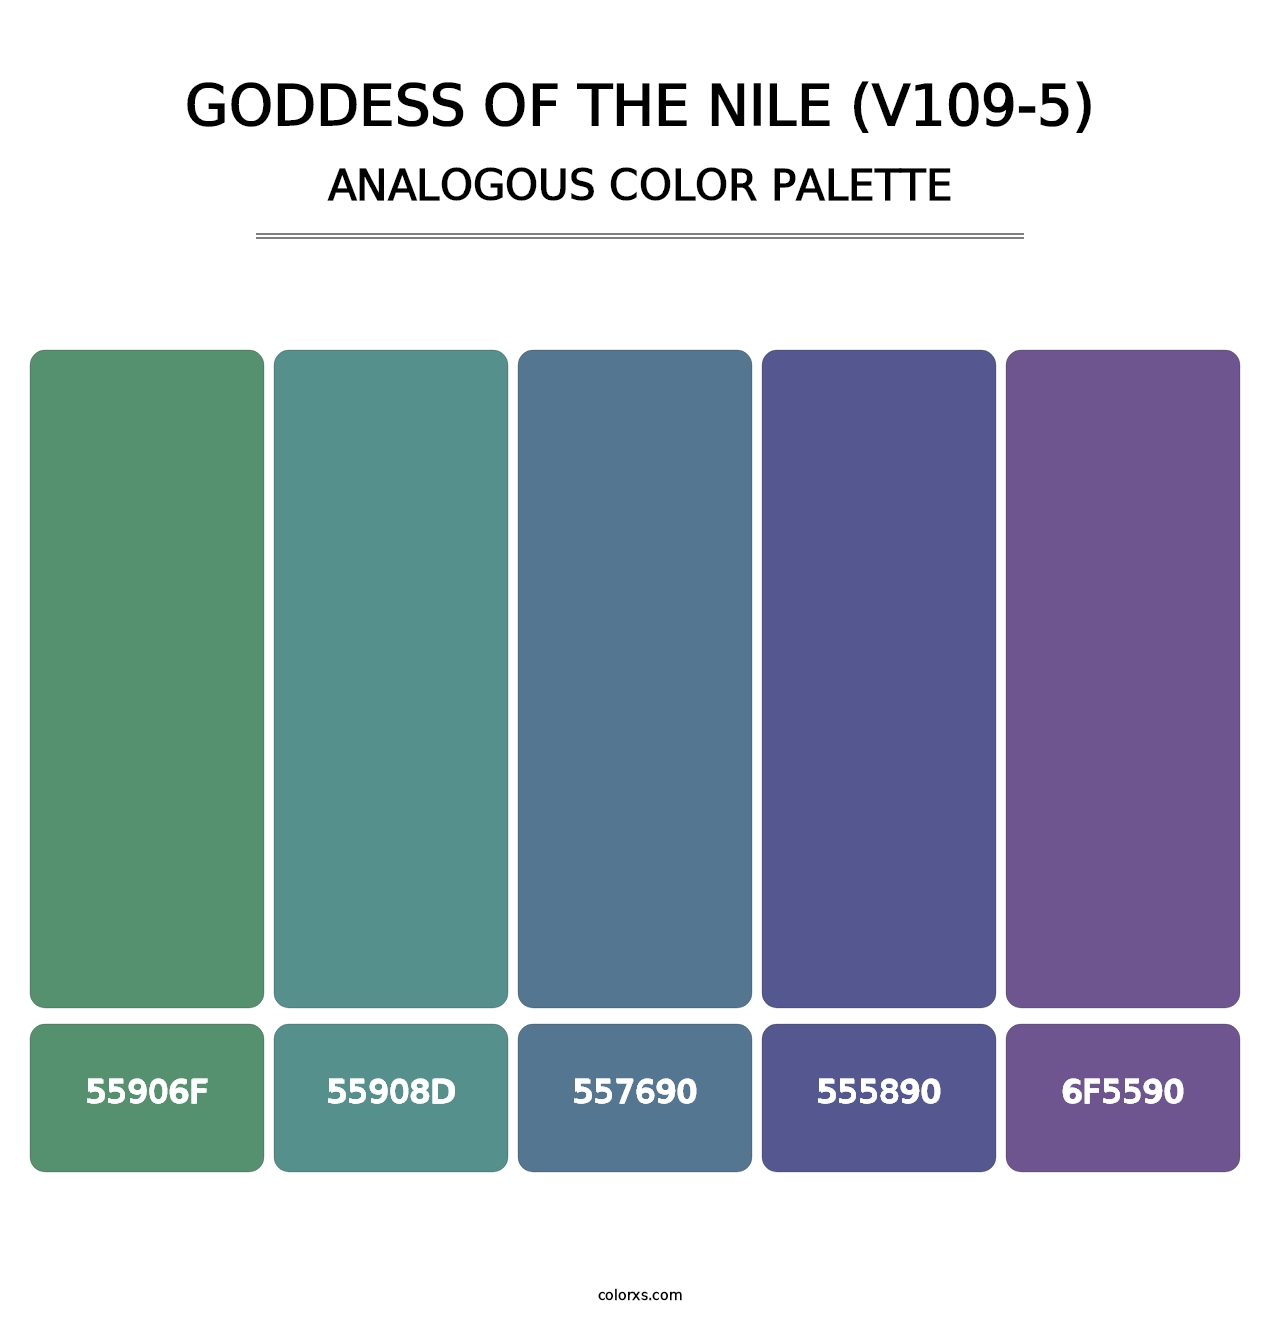 Goddess of the Nile (V109-5) - Analogous Color Palette